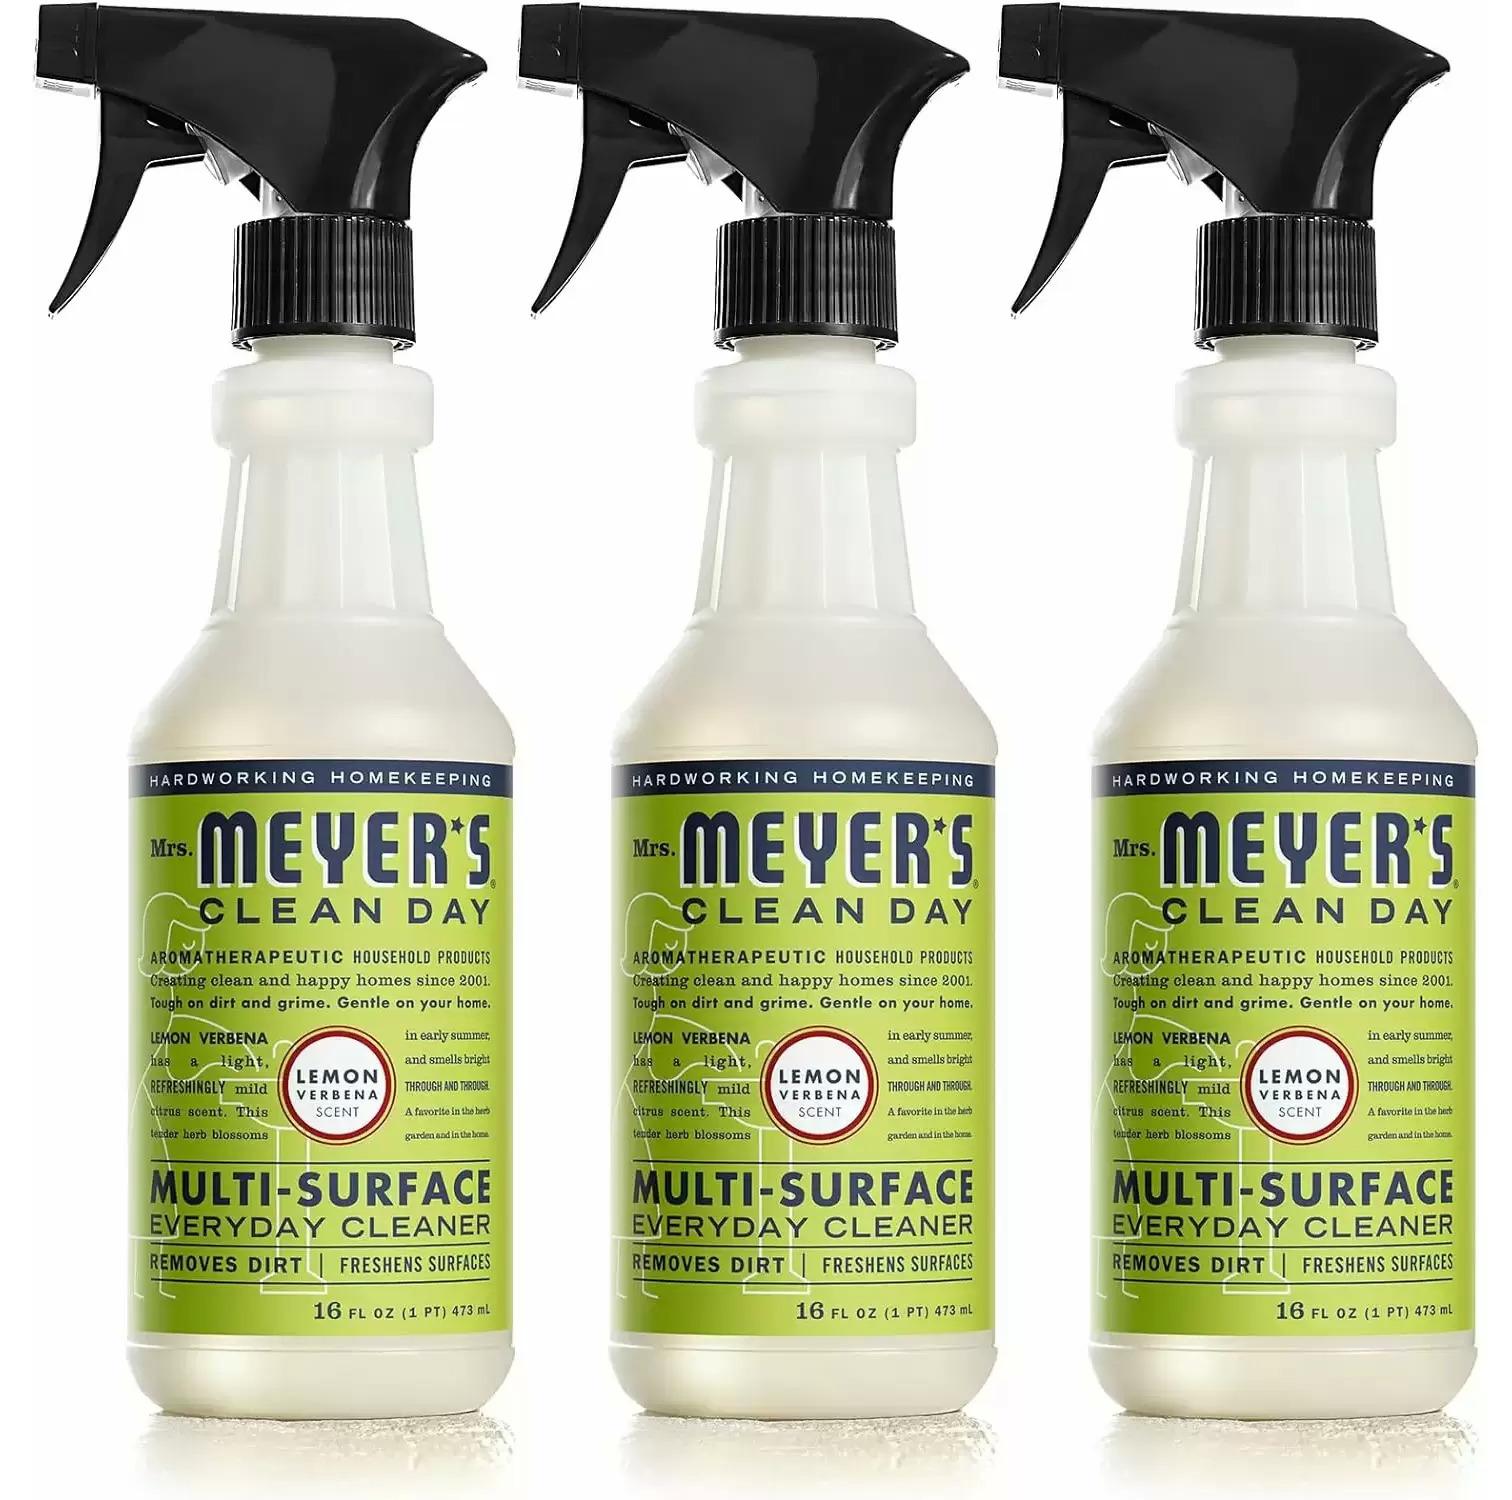 Mrs Meyers All-Purpose Cleaner Spray Lemon Verbena 3 Pack for $5.98